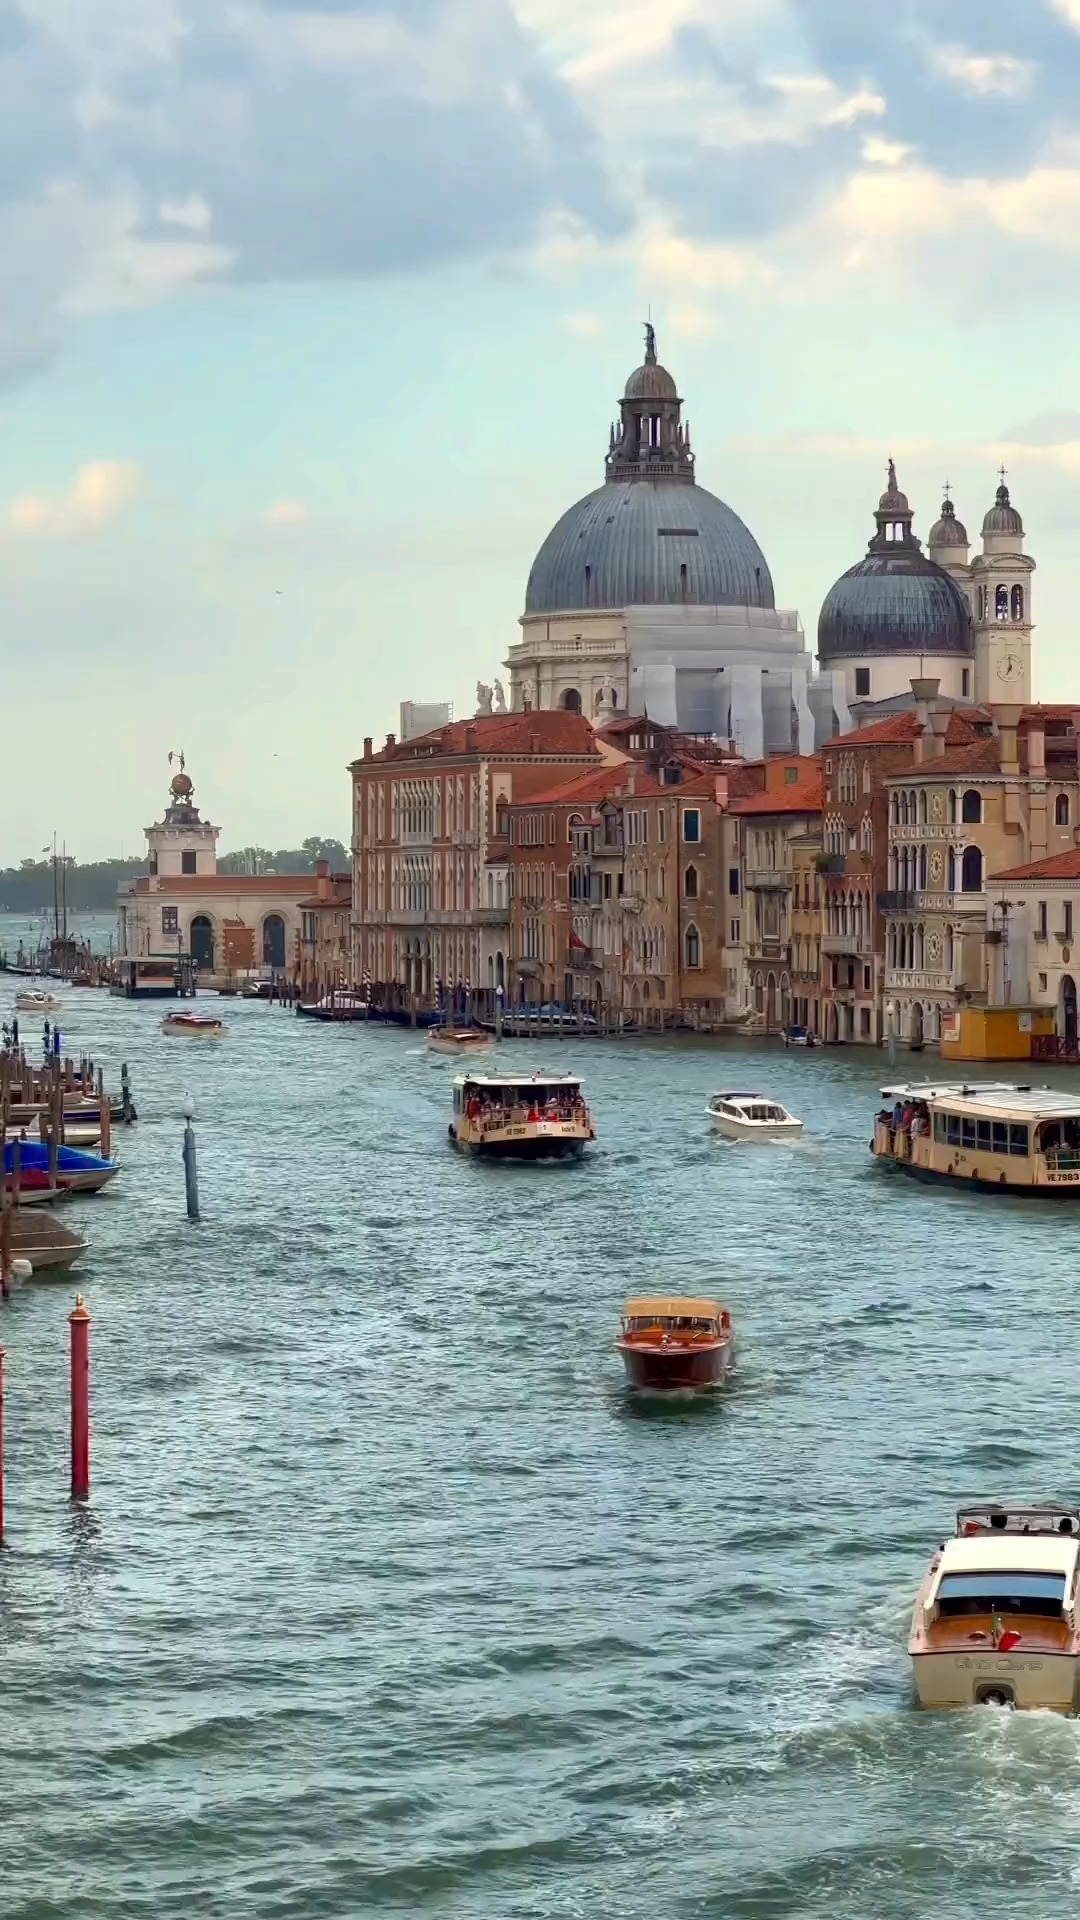 威尼斯(Venice)，世界上唯一没有汽车和马路的城市，出行只能靠走路和坐船。威尼斯是一座建在水面上的城市，因此被公认为是欧洲最浪漫的城